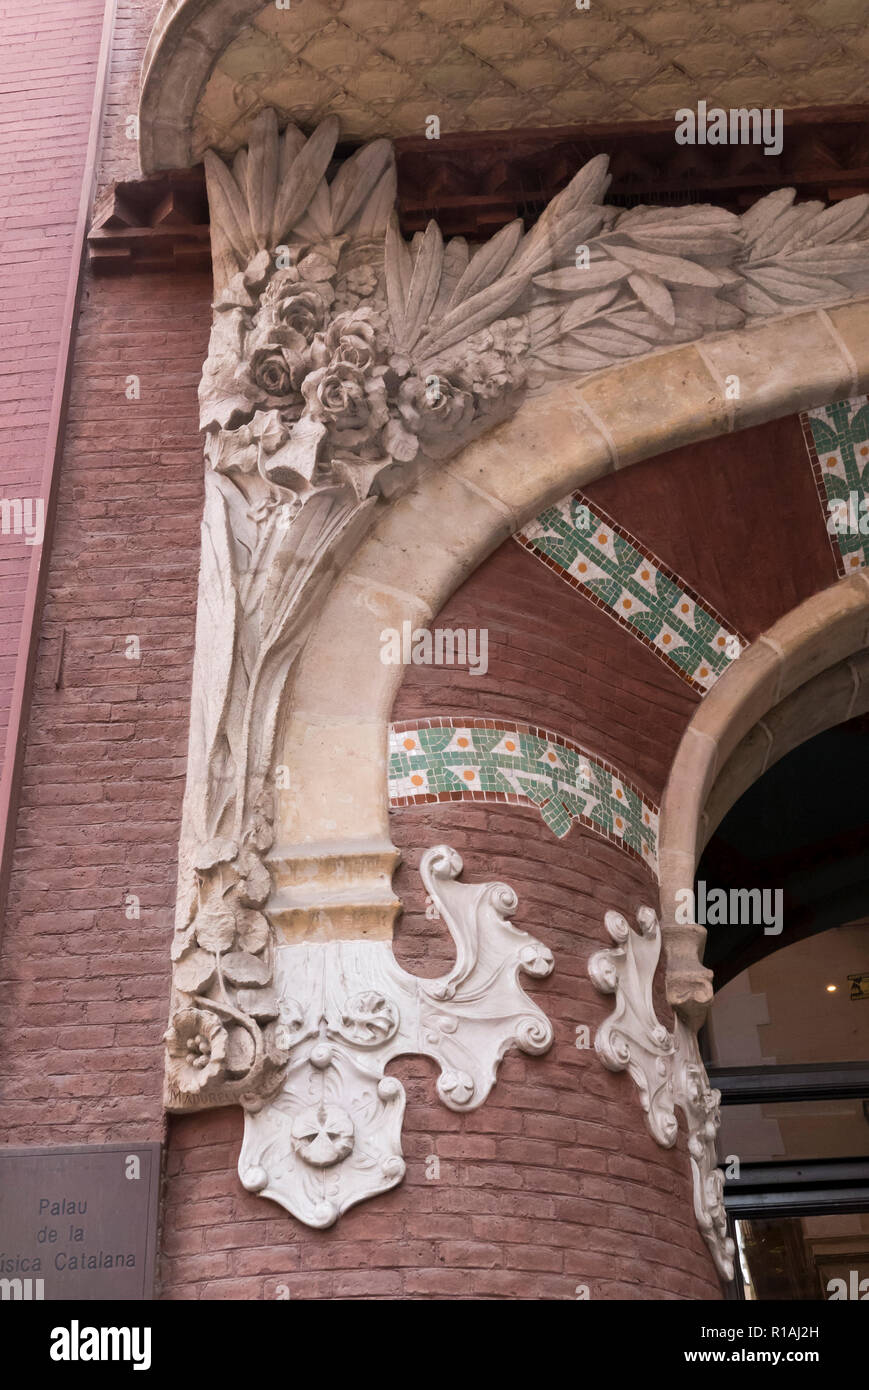 Décorations en pierre classique sur le mur extérieur de la Palau de la Musica, Barcelone, Espagne Banque D'Images